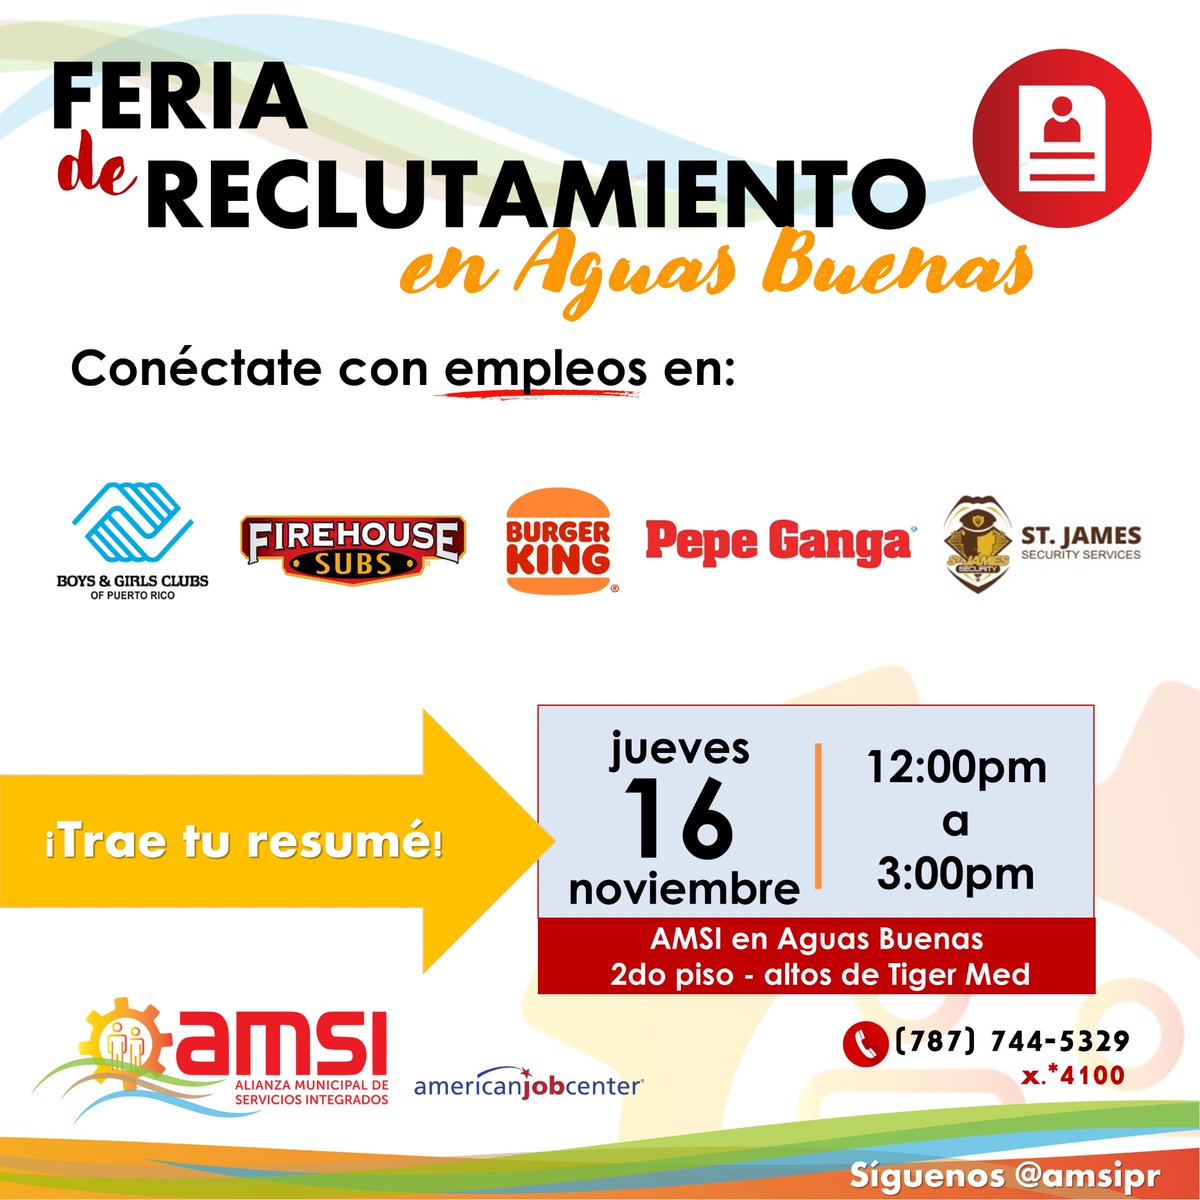 Feria de Reclutamiento en #AguasBuenas!!!